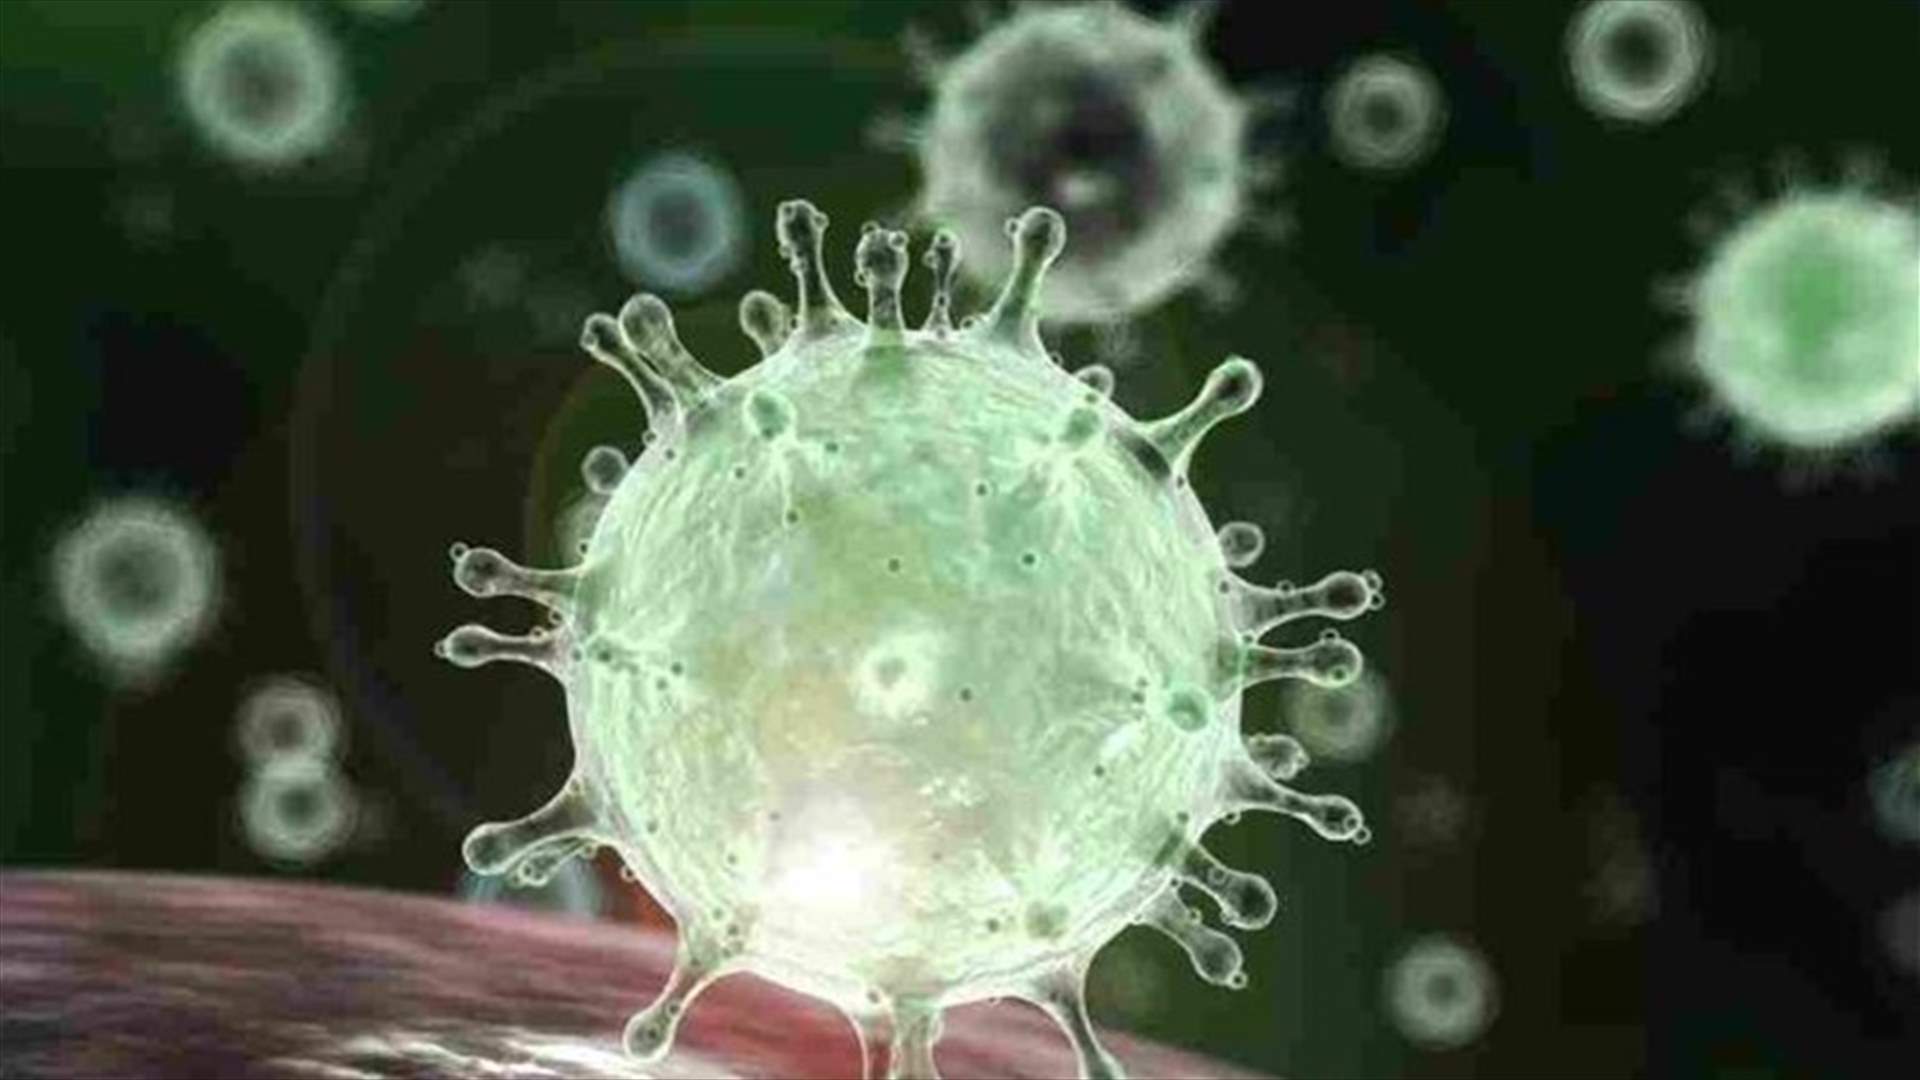 المكسيك تسجل 4442 إصابة جديدة بفيروس كورونا في أكبر حصيلة يومية